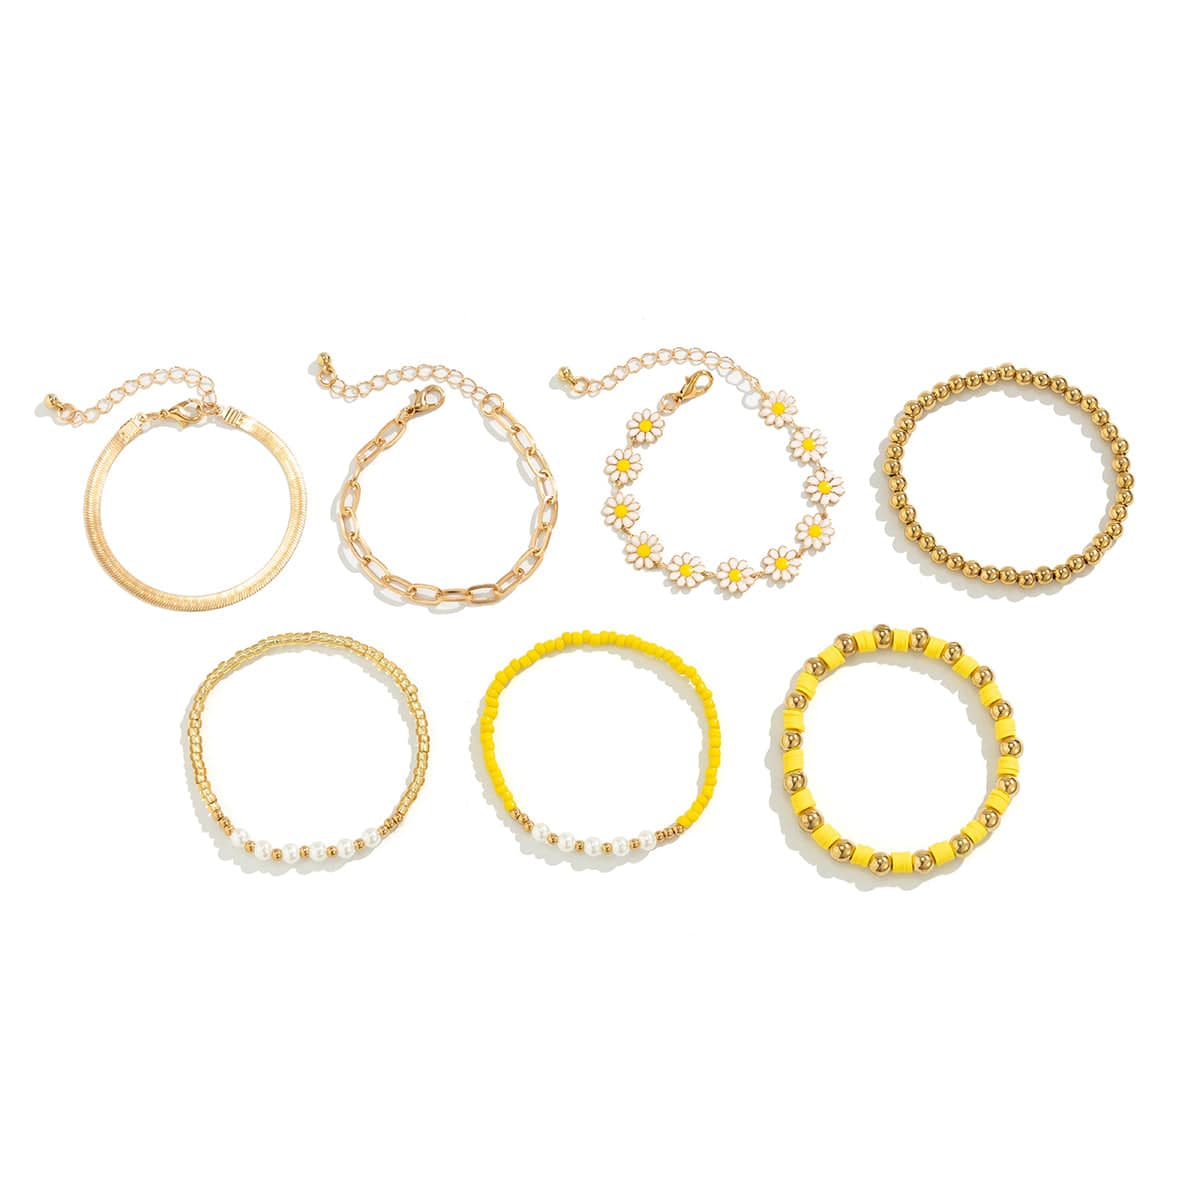 7 Pcs Gold Plated Polymer Clay Flower Ball Chain Stackable Bracelet Set - ArtGalleryZen